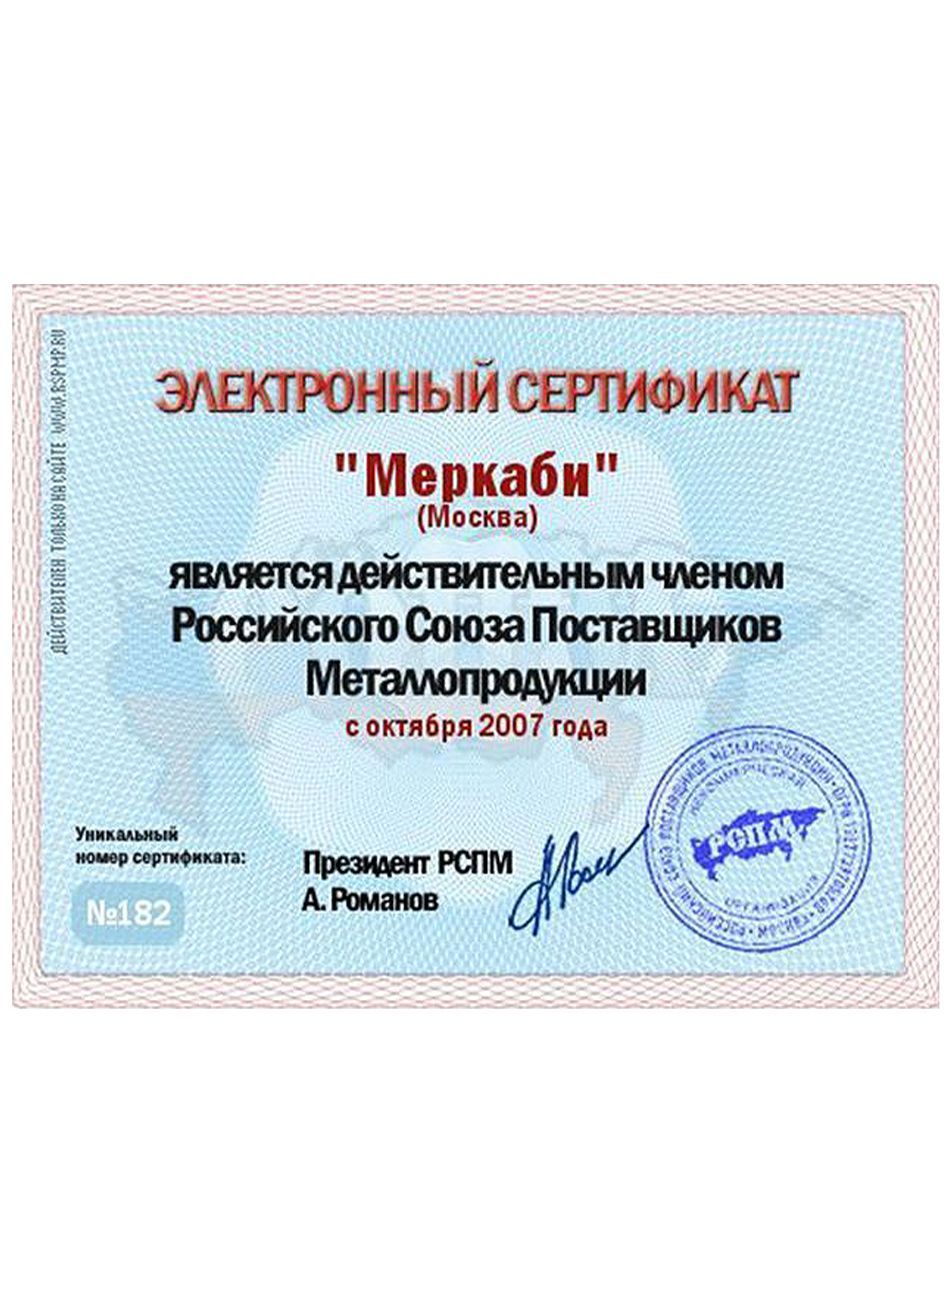 Электронный сертификат "Меркаби" о членстве в российском союзе поставщиков металлопродукции